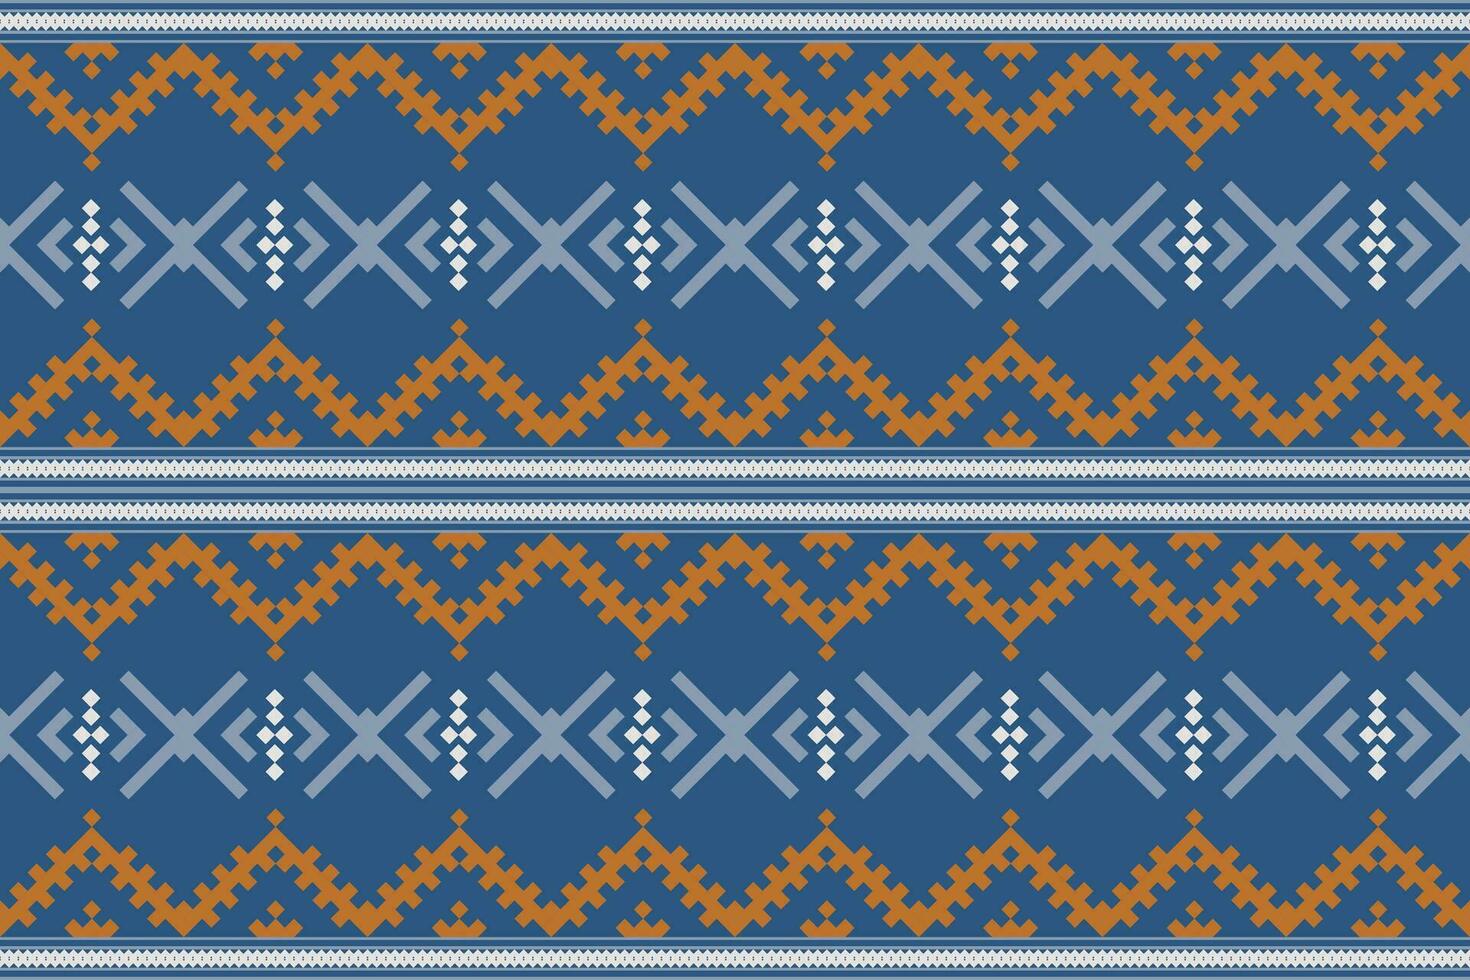 aztec meetkundig patroon voor levendig kleur.damast stijl patroon voor textiel en decoratie.etnisch abstract ikat.naadloos patroon in tribaal.inheems aztec boho vector ontwerp.